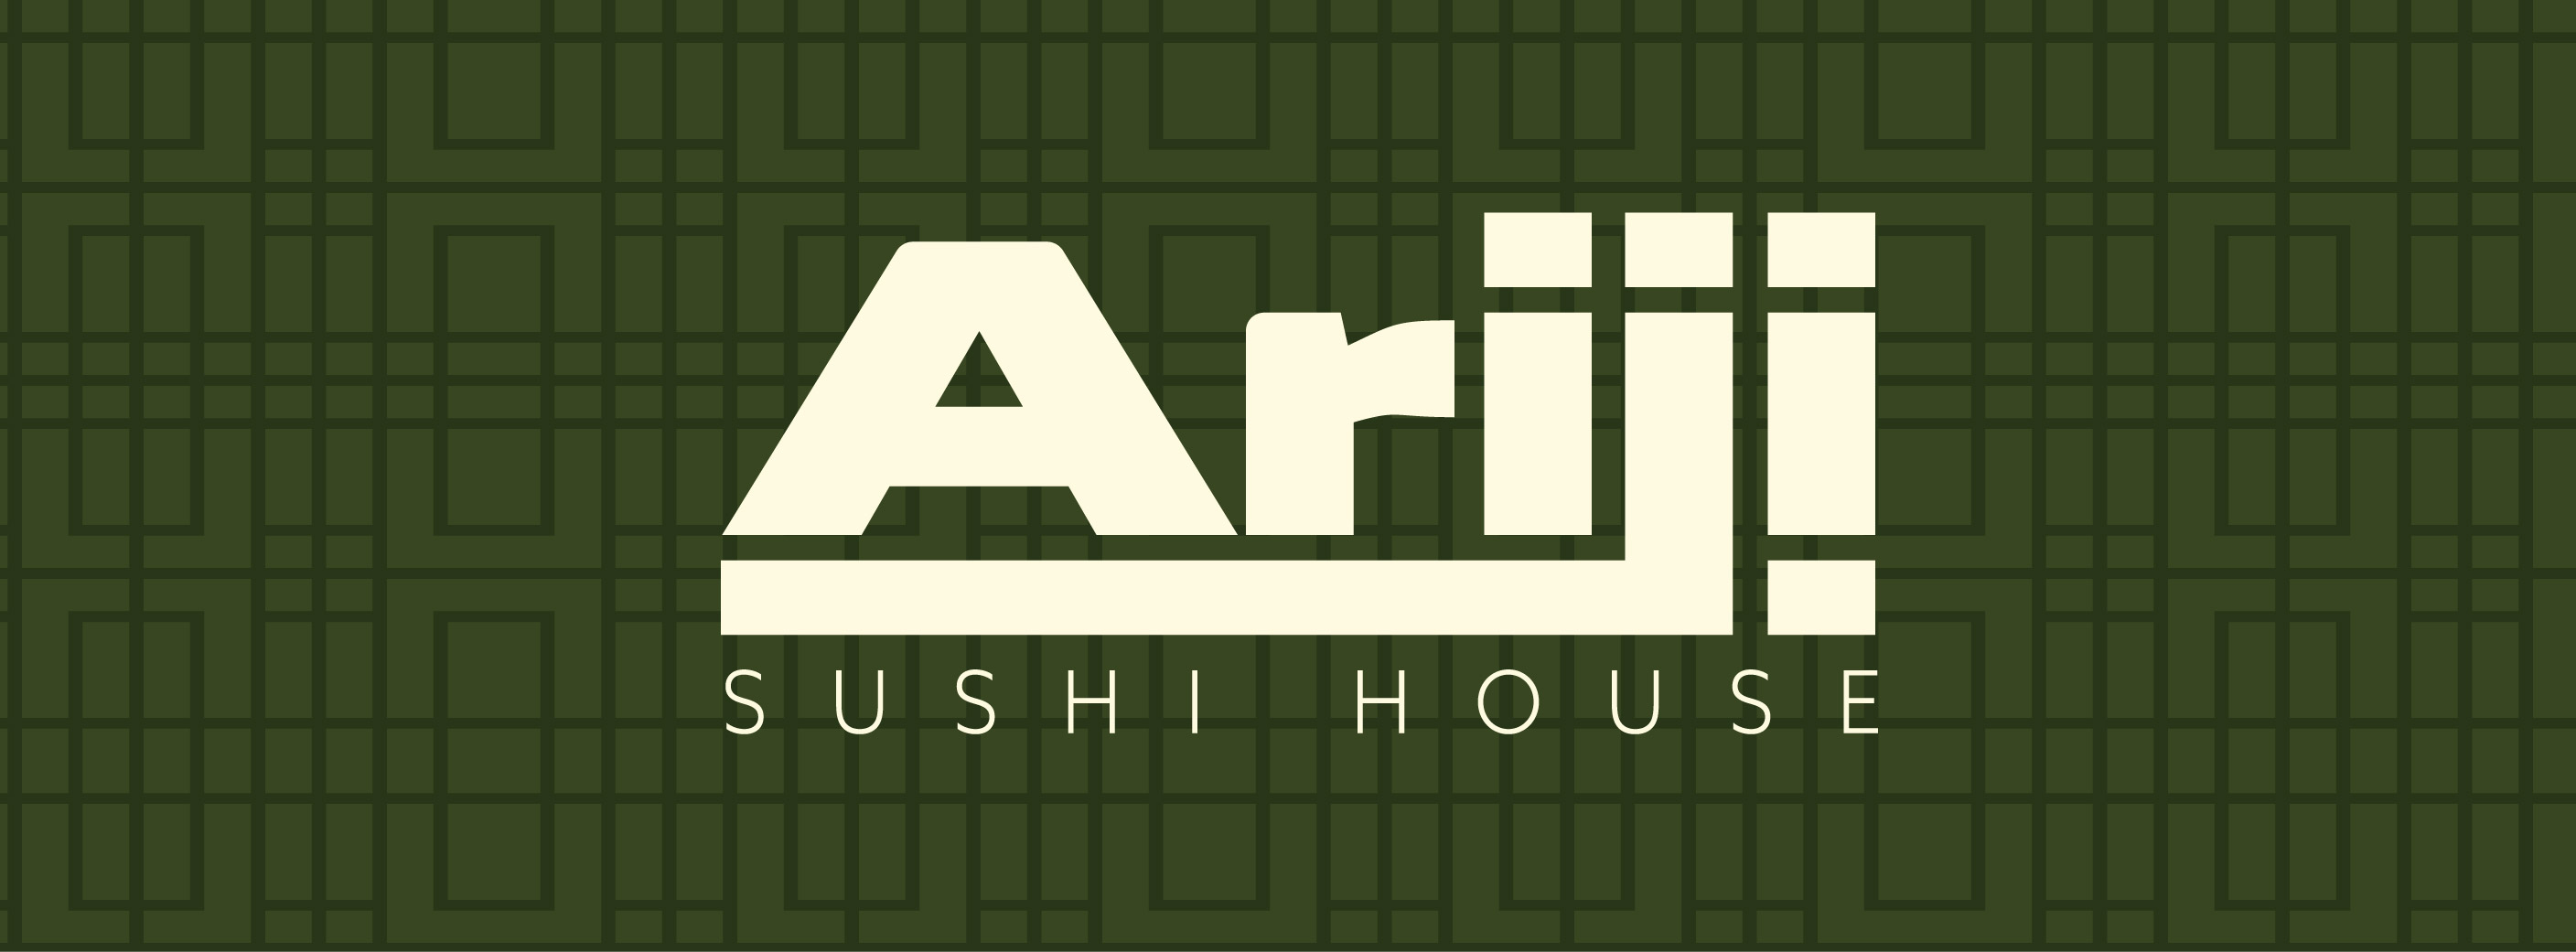 Ariji Logo inspired by Japanese kanji